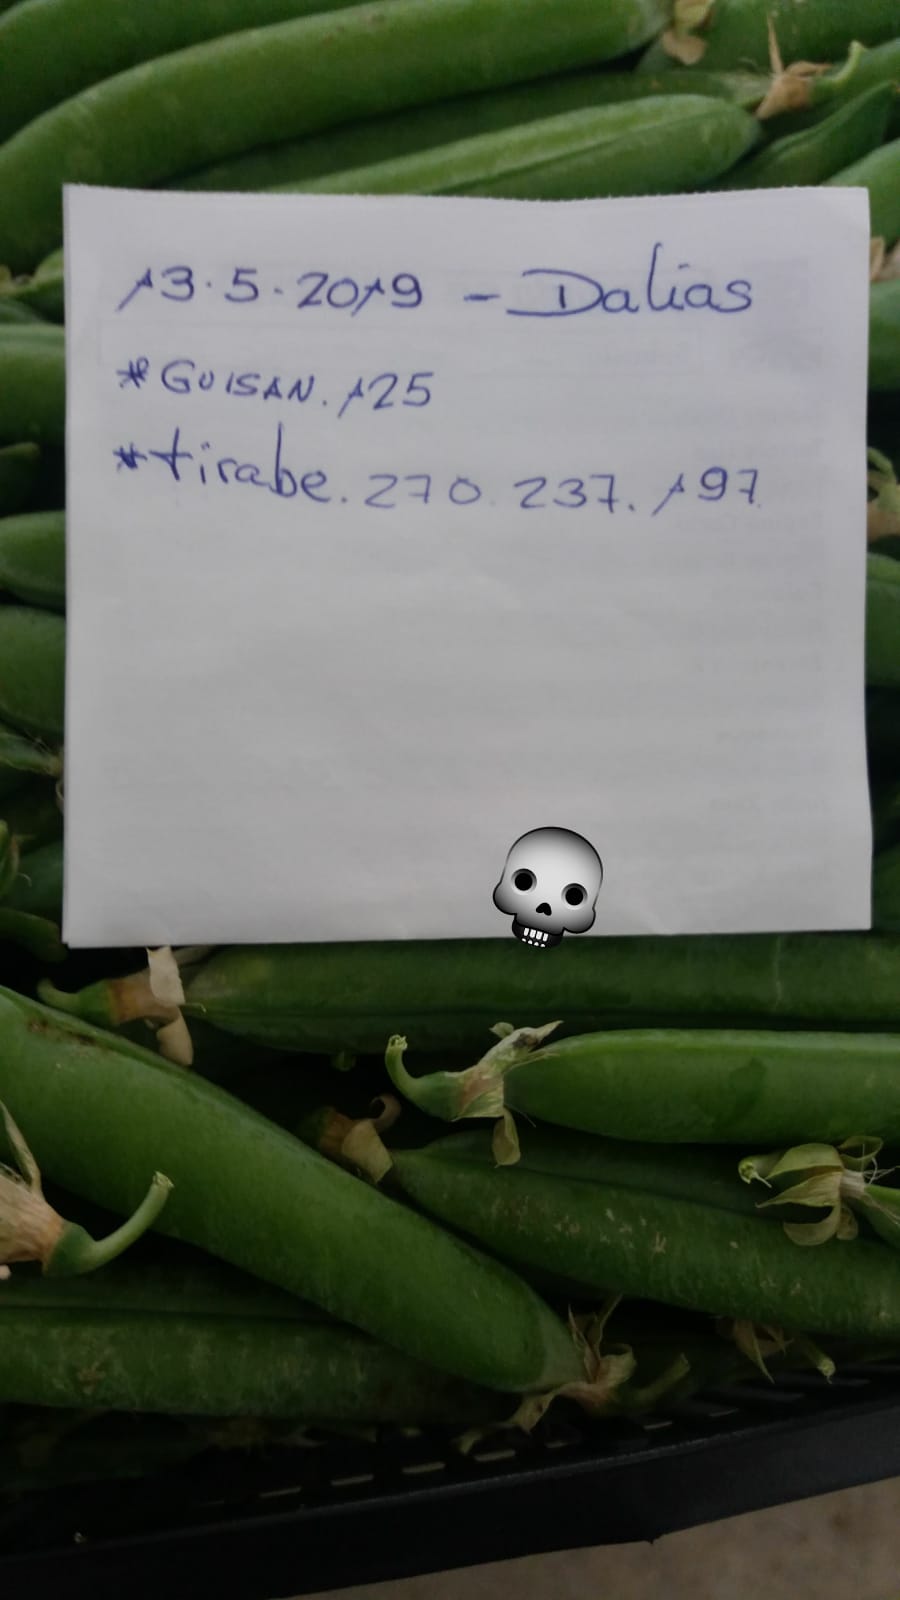 Subasta hortofrutícola AgroEjido Dalias 13 de Mayo 2019